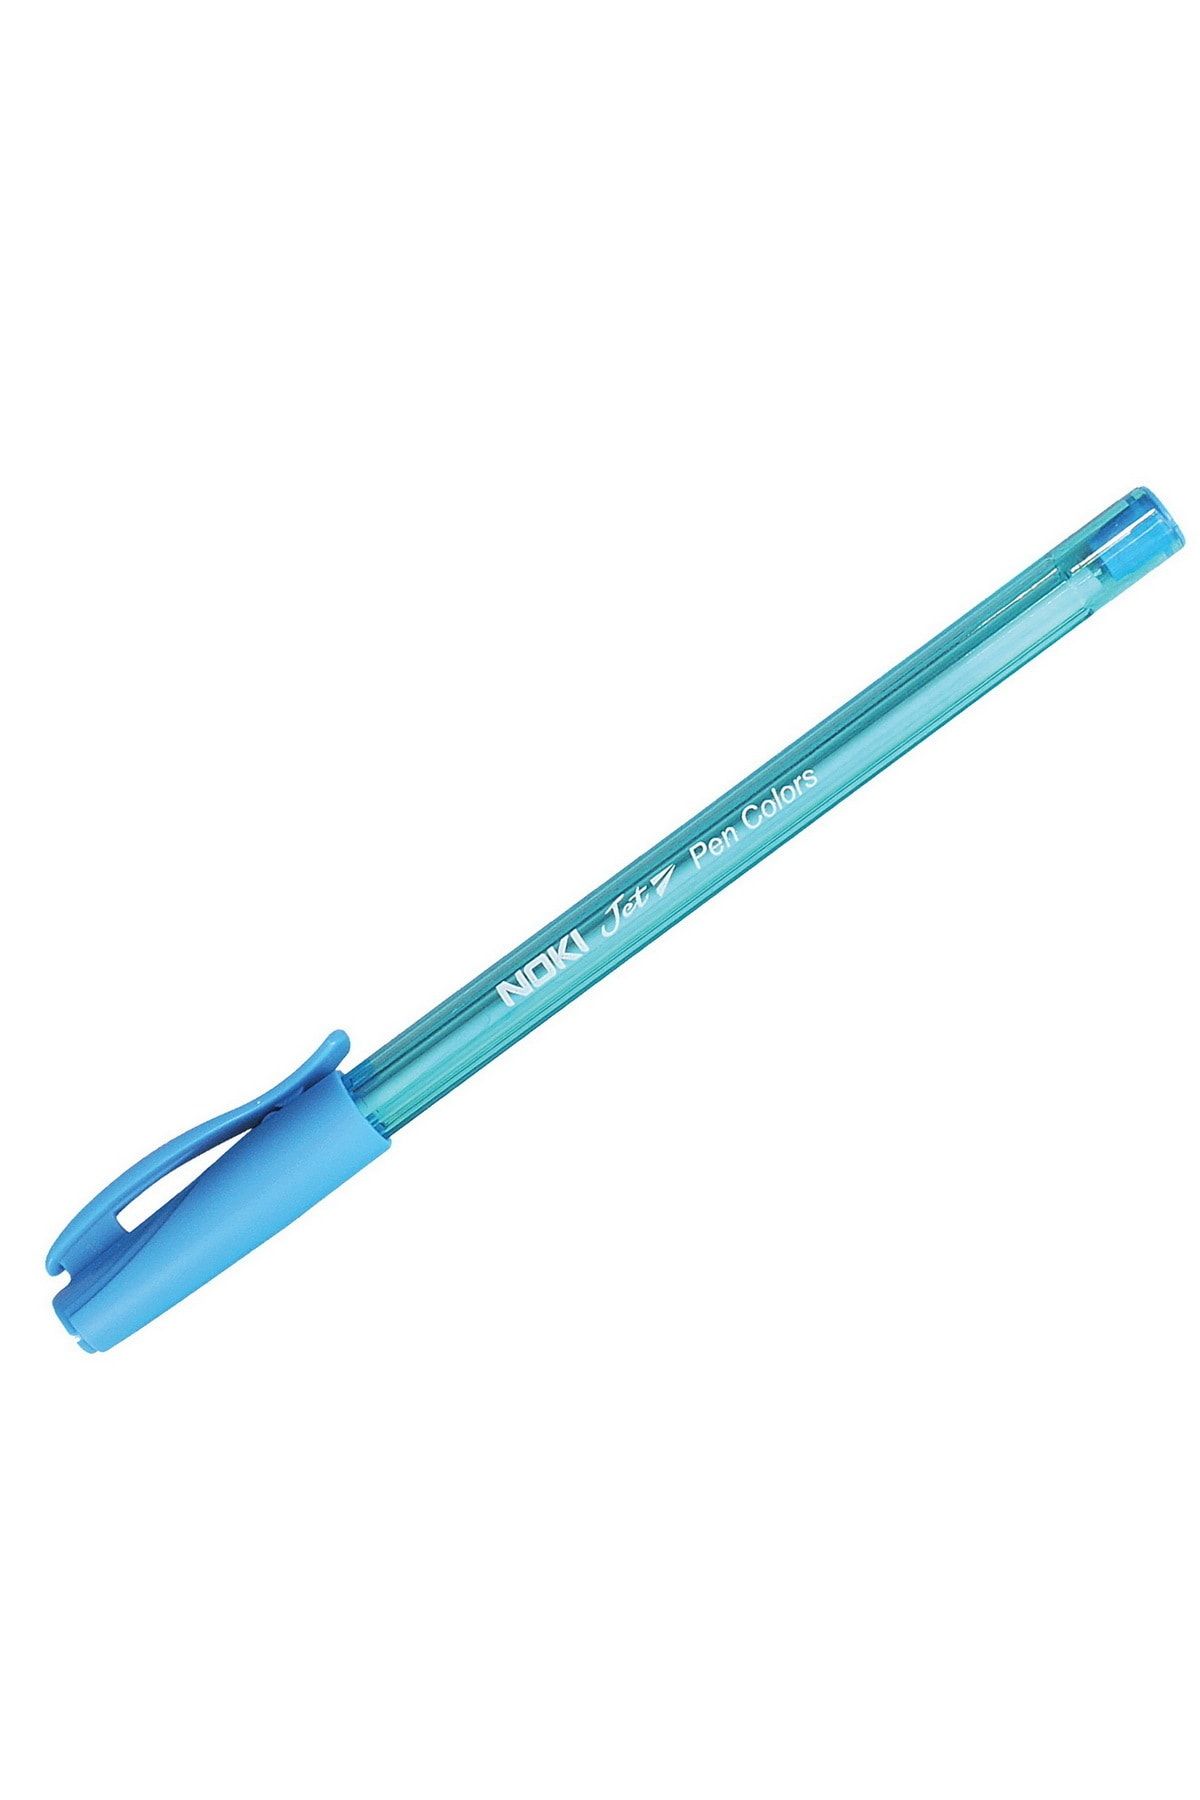 Noki Jet Ball Pen Tükenmez Kalem (jbpr-110) Açık Mavi